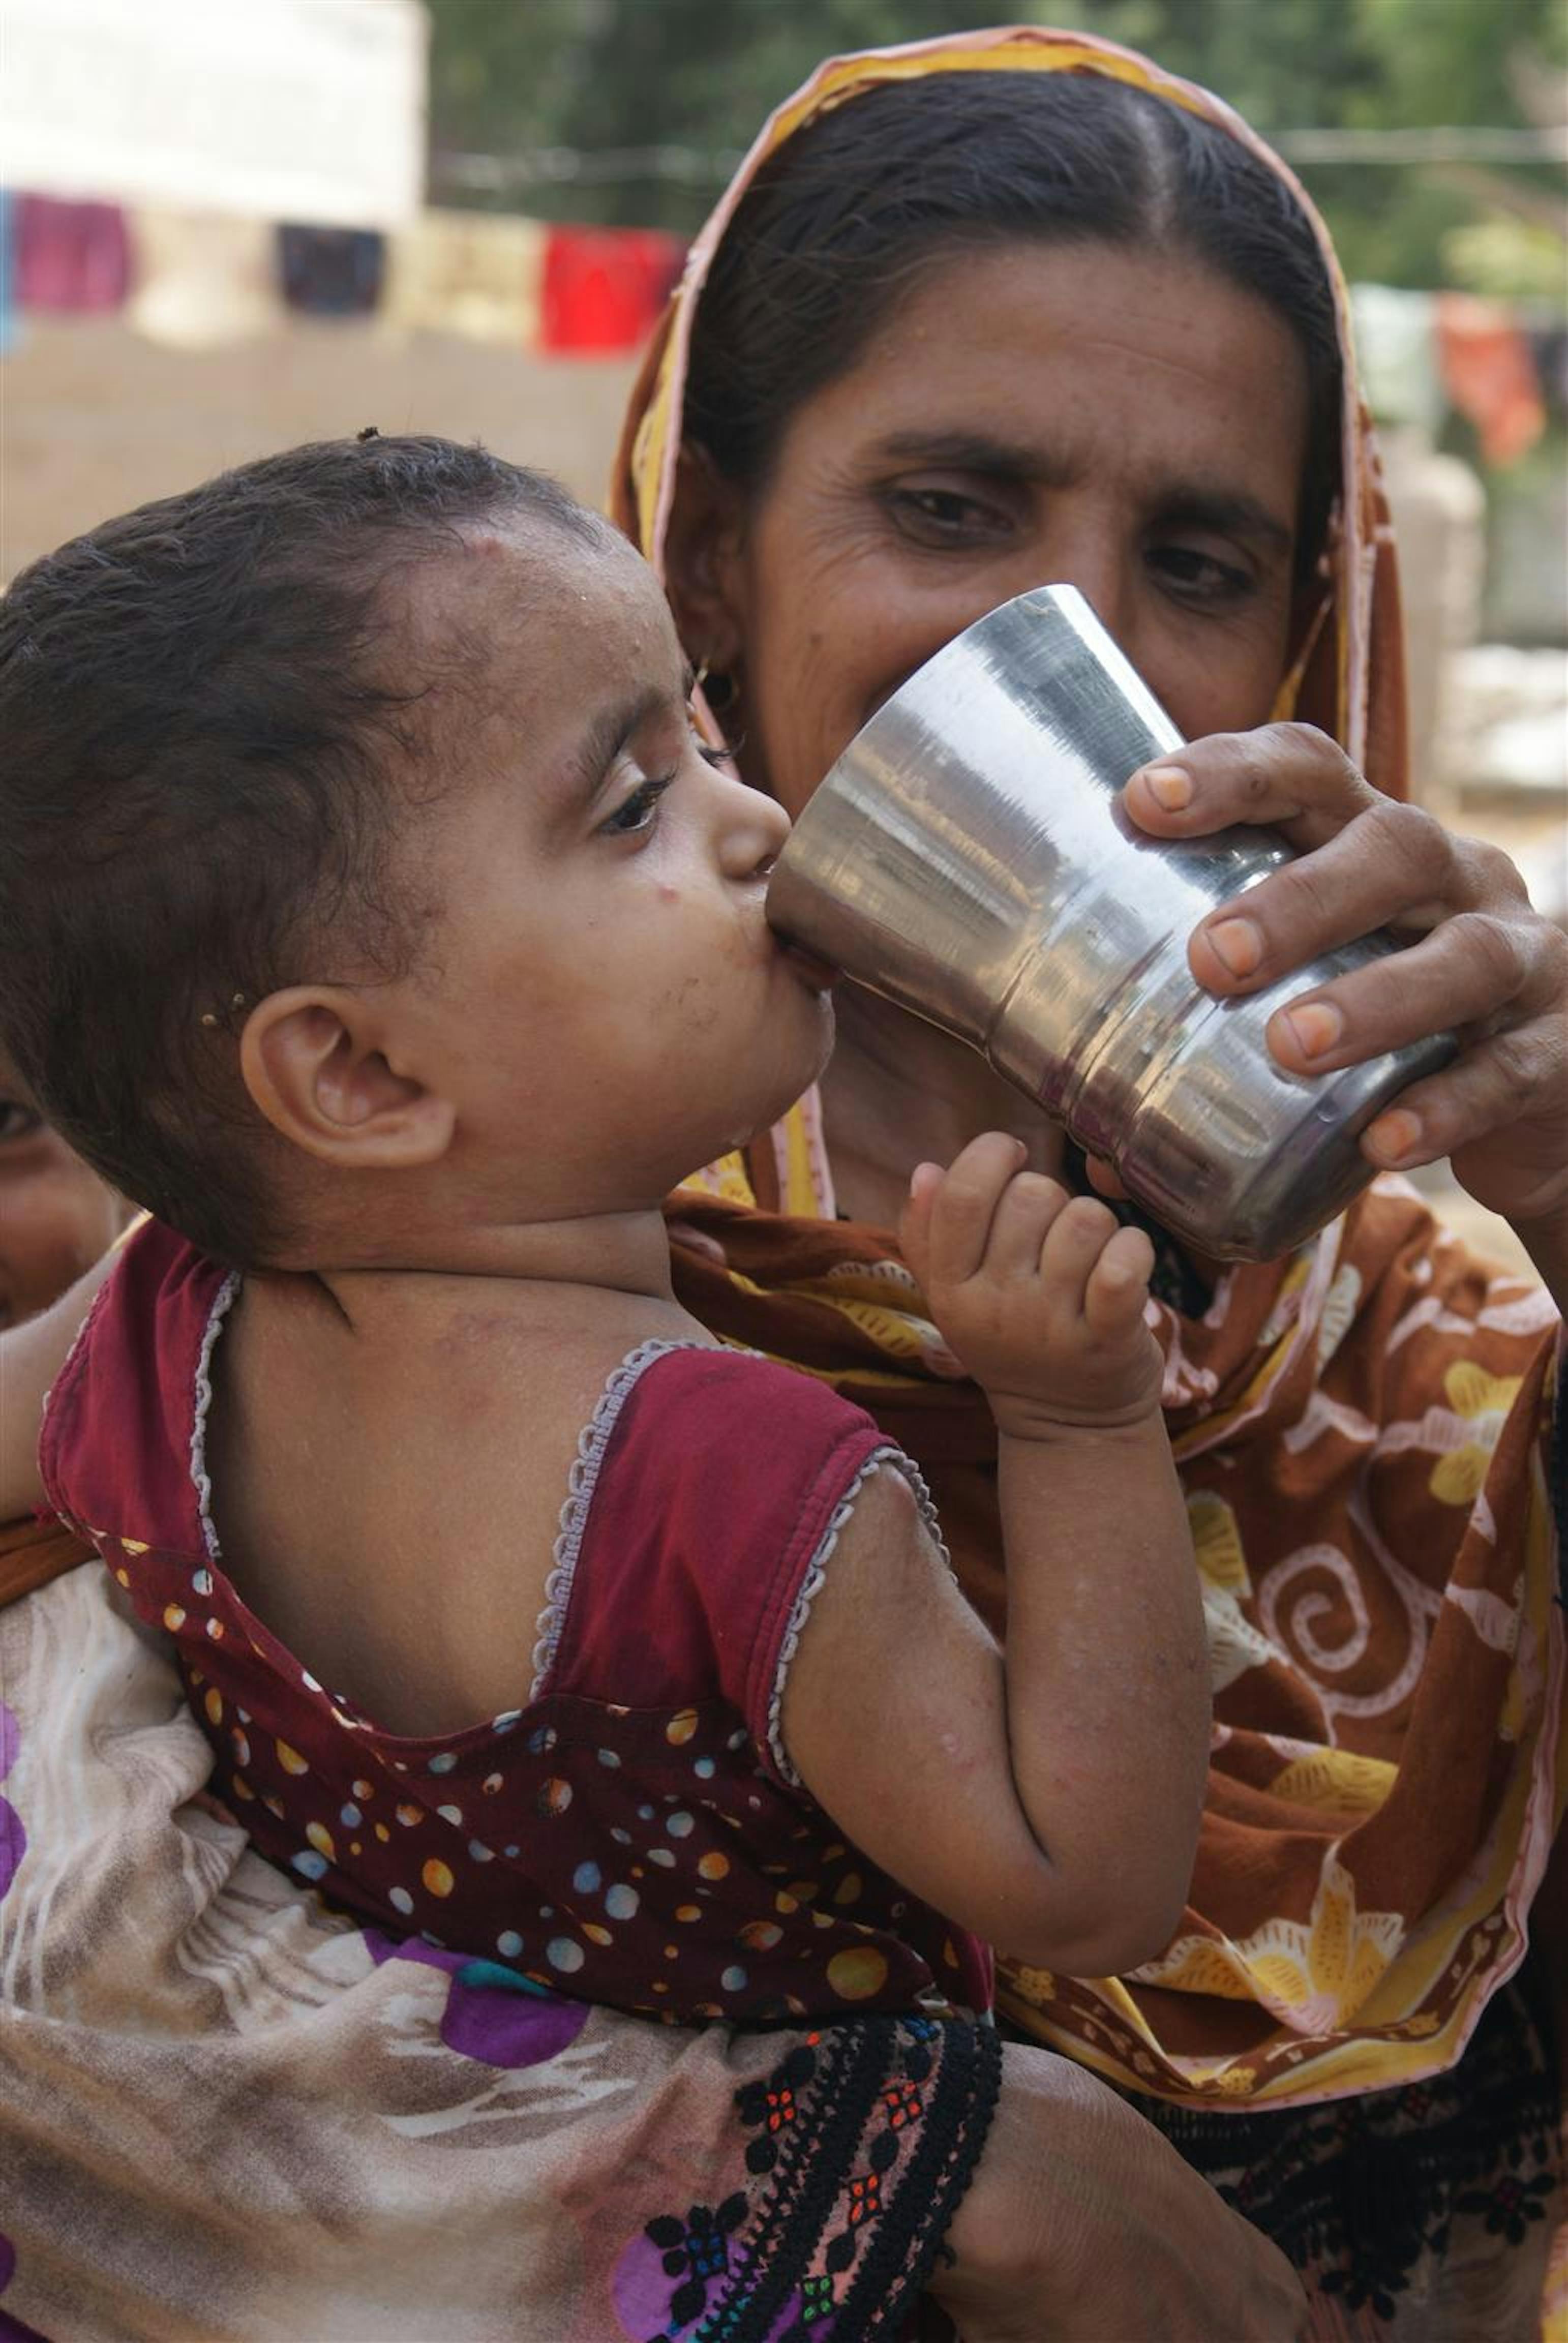 Una donna fa bere al suo bambino una soluzione di sali reidratanti, terapia efficace contro la disidratazione da diarrea. La foto è stata scattata in un villaggio della provincia di Sindh, nel Pakistan meridionale - ©UNICEF/NYHQ2010-1713/T.McBride